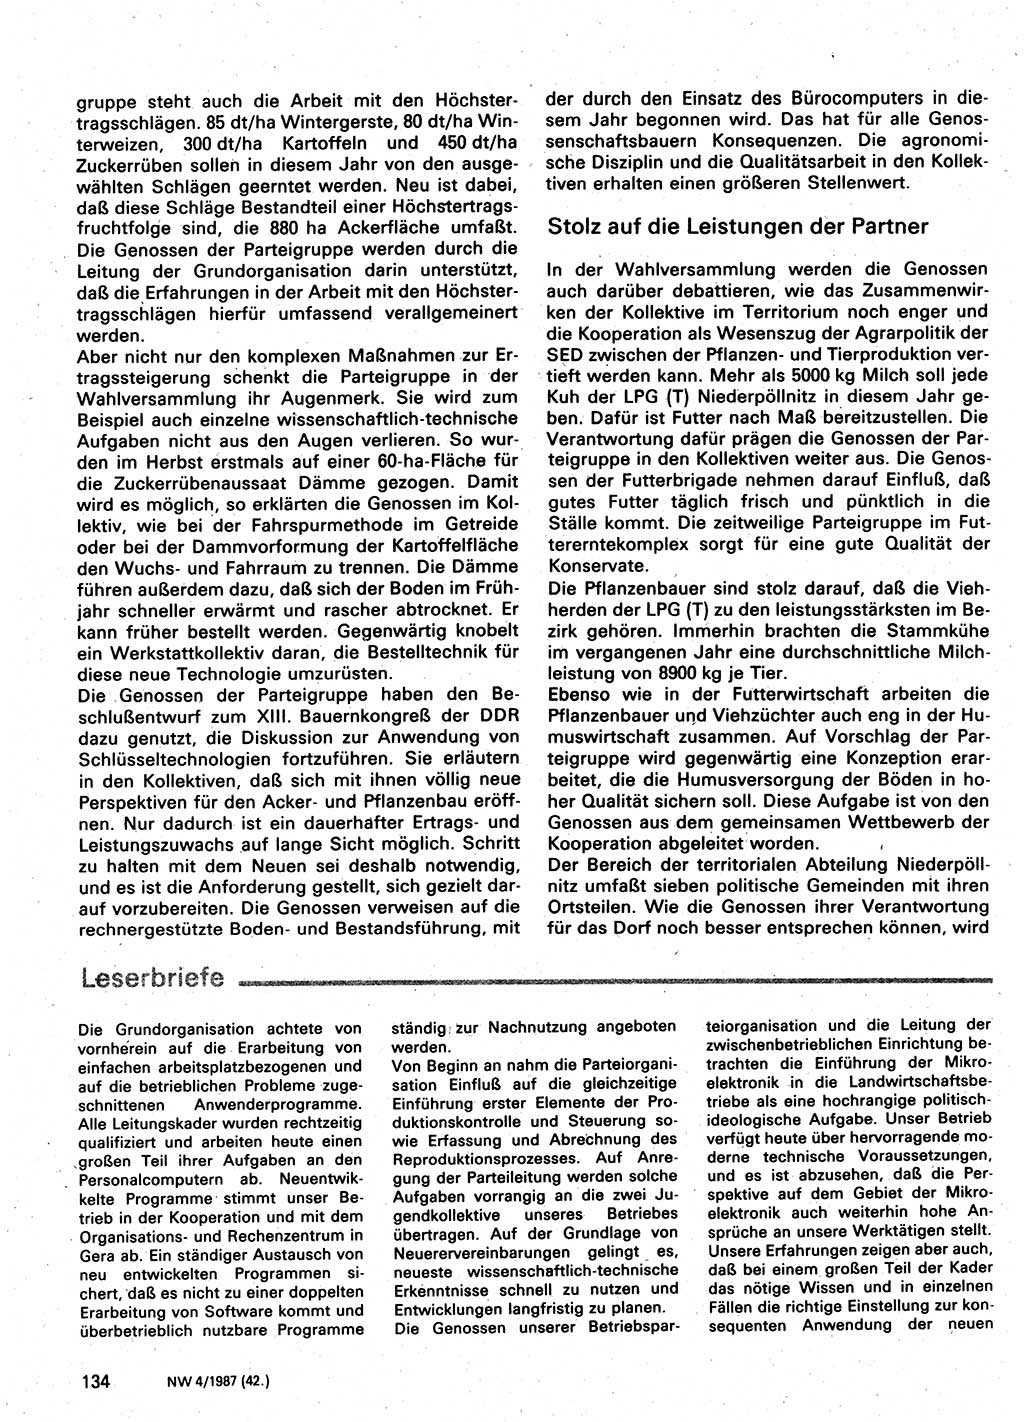 Neuer Weg (NW), Organ des Zentralkomitees (ZK) der SED (Sozialistische Einheitspartei Deutschlands) für Fragen des Parteilebens, 42. Jahrgang [Deutsche Demokratische Republik (DDR)] 1987, Seite 134 (NW ZK SED DDR 1987, S. 134)